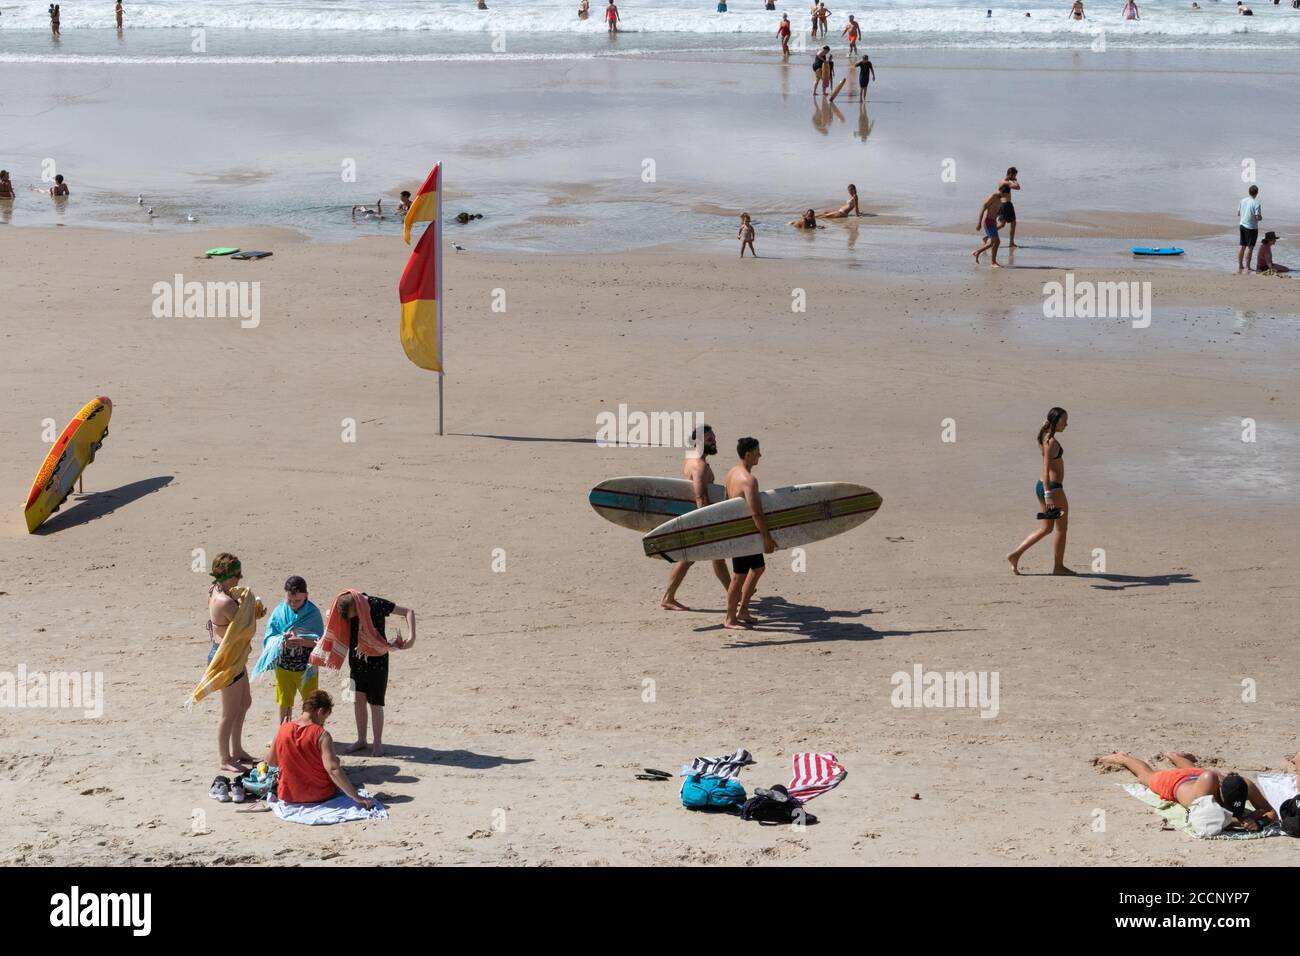 Día de la playa: Dos jóvenes llevando tablas de surf, familia, niños jugando, gente caminando, tabla de rescate de surf. Playa principal, Byron Bay, Australia Foto de stock